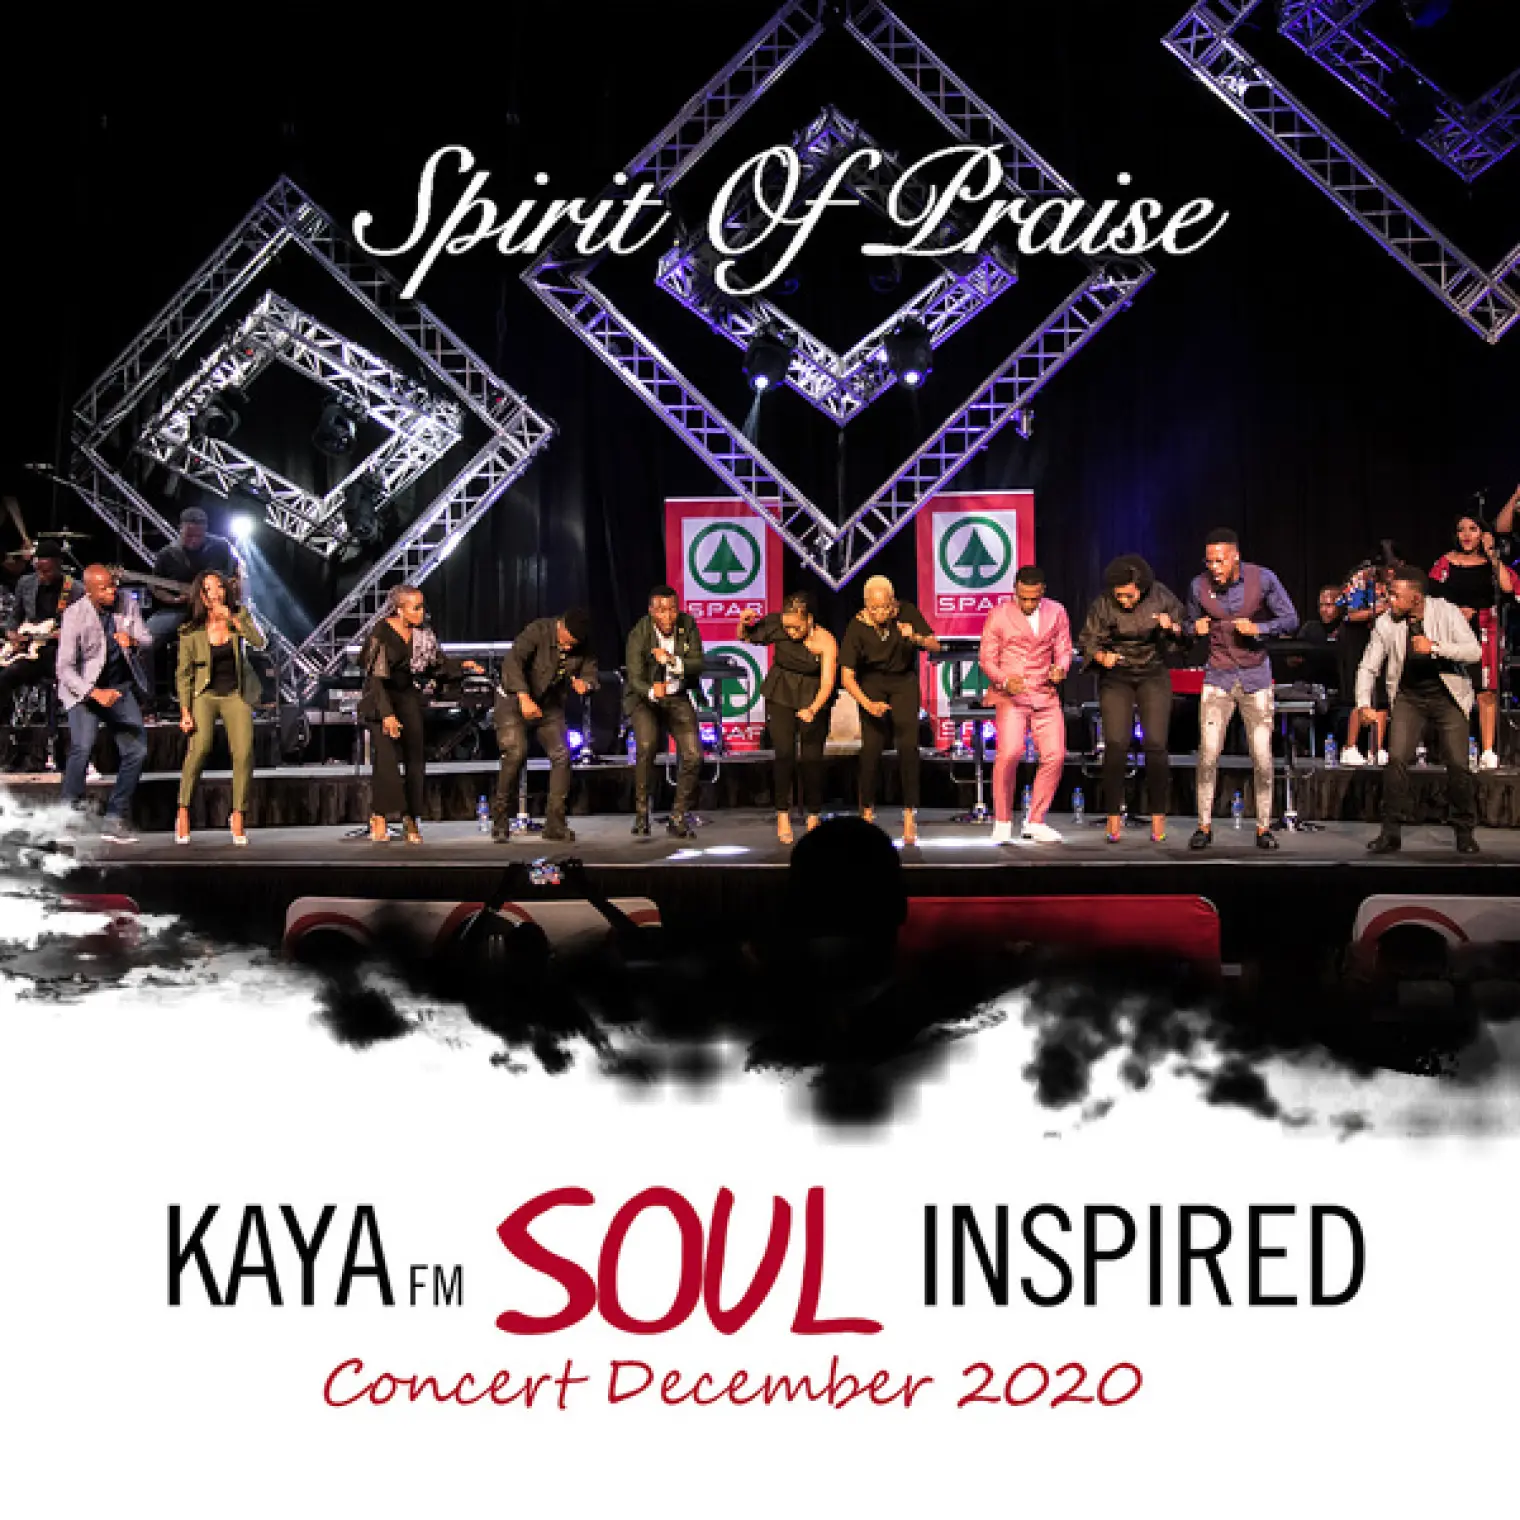 Kaya FM Soul Inspired Concert December 2020 (Live) -  Spirit of Praise 